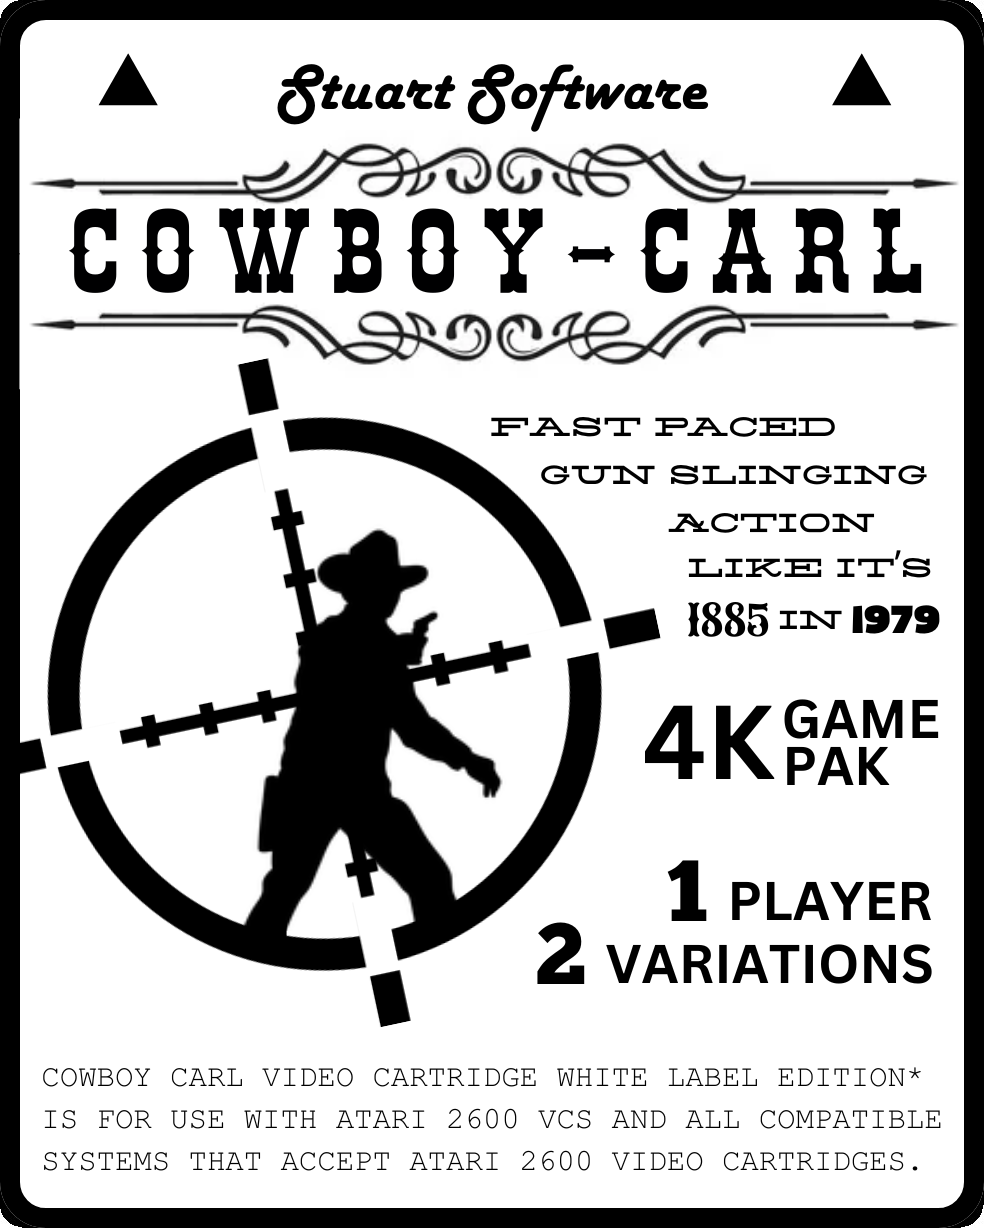 Cowboy Carl